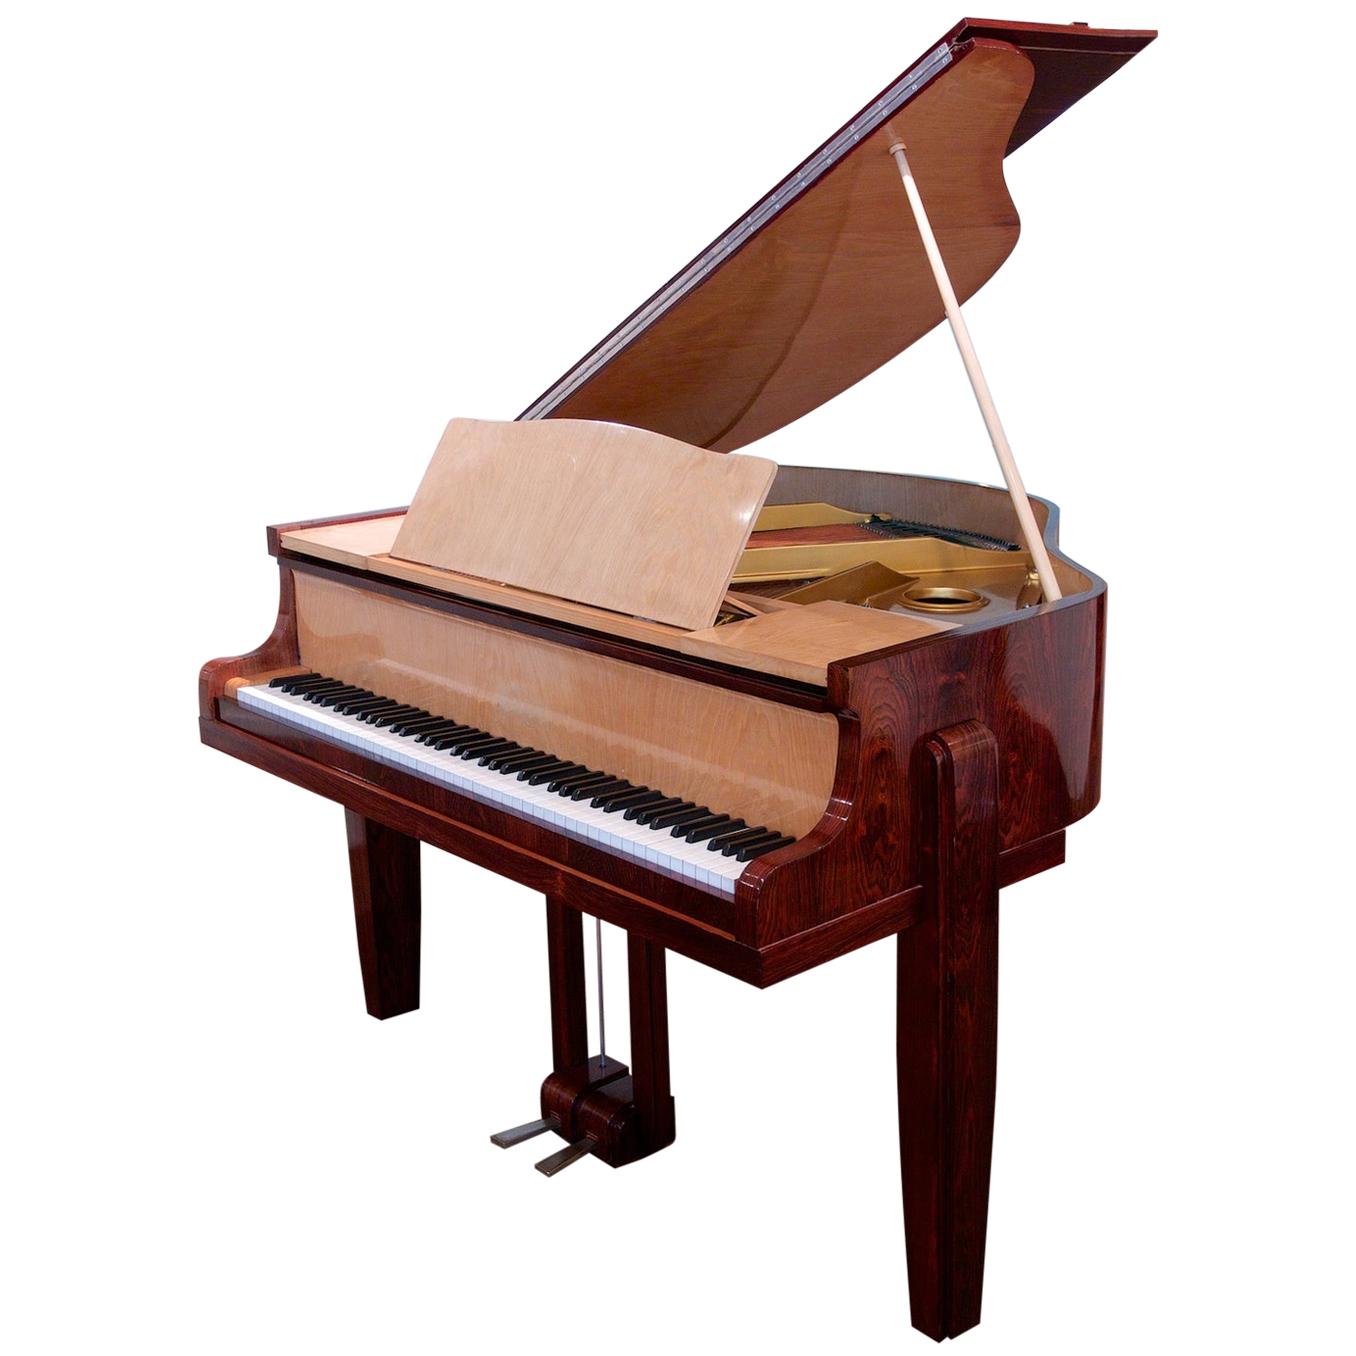 Pierre-Paul Montagnac Modernist Piano For Sale